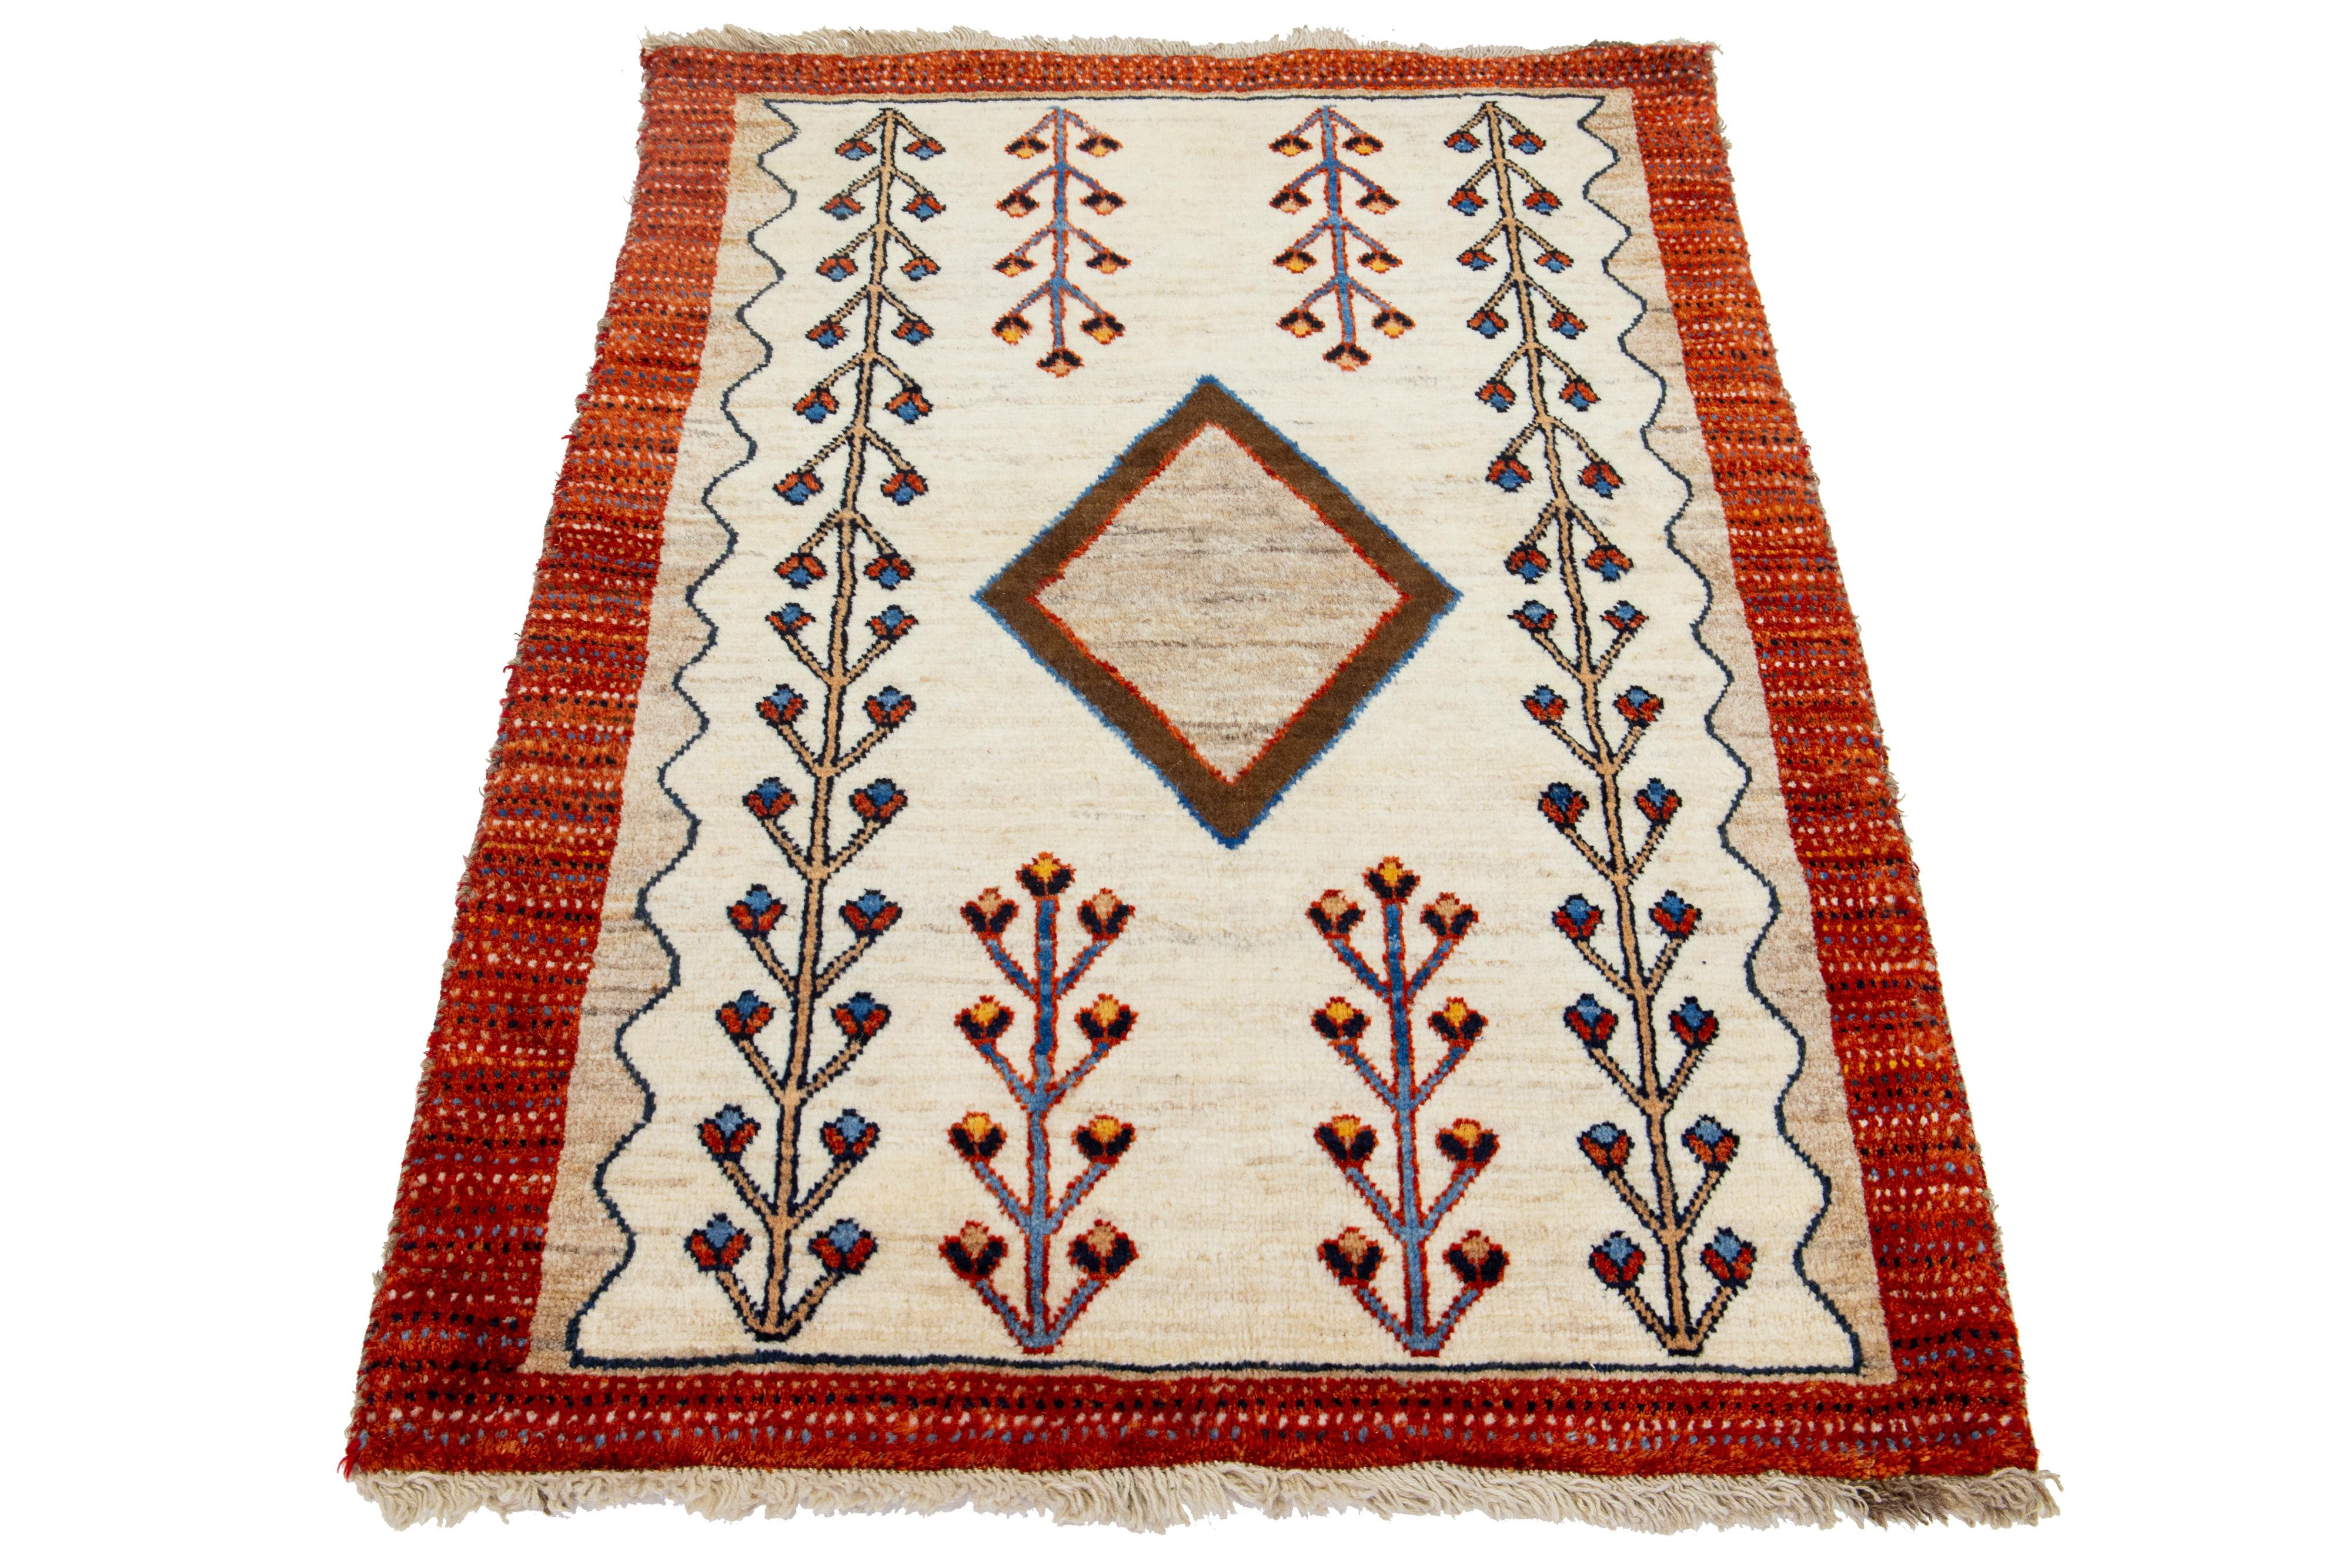 Dieser moderne Gabbeh-Teppich ist handgeknüpft und weist ein zeitgenössisches geometrisches Muster auf. Der beigefarbene Sockel wird durch rostfarbene, braune und blaue Details akzentuiert.

Dieser Teppich misst 3'3